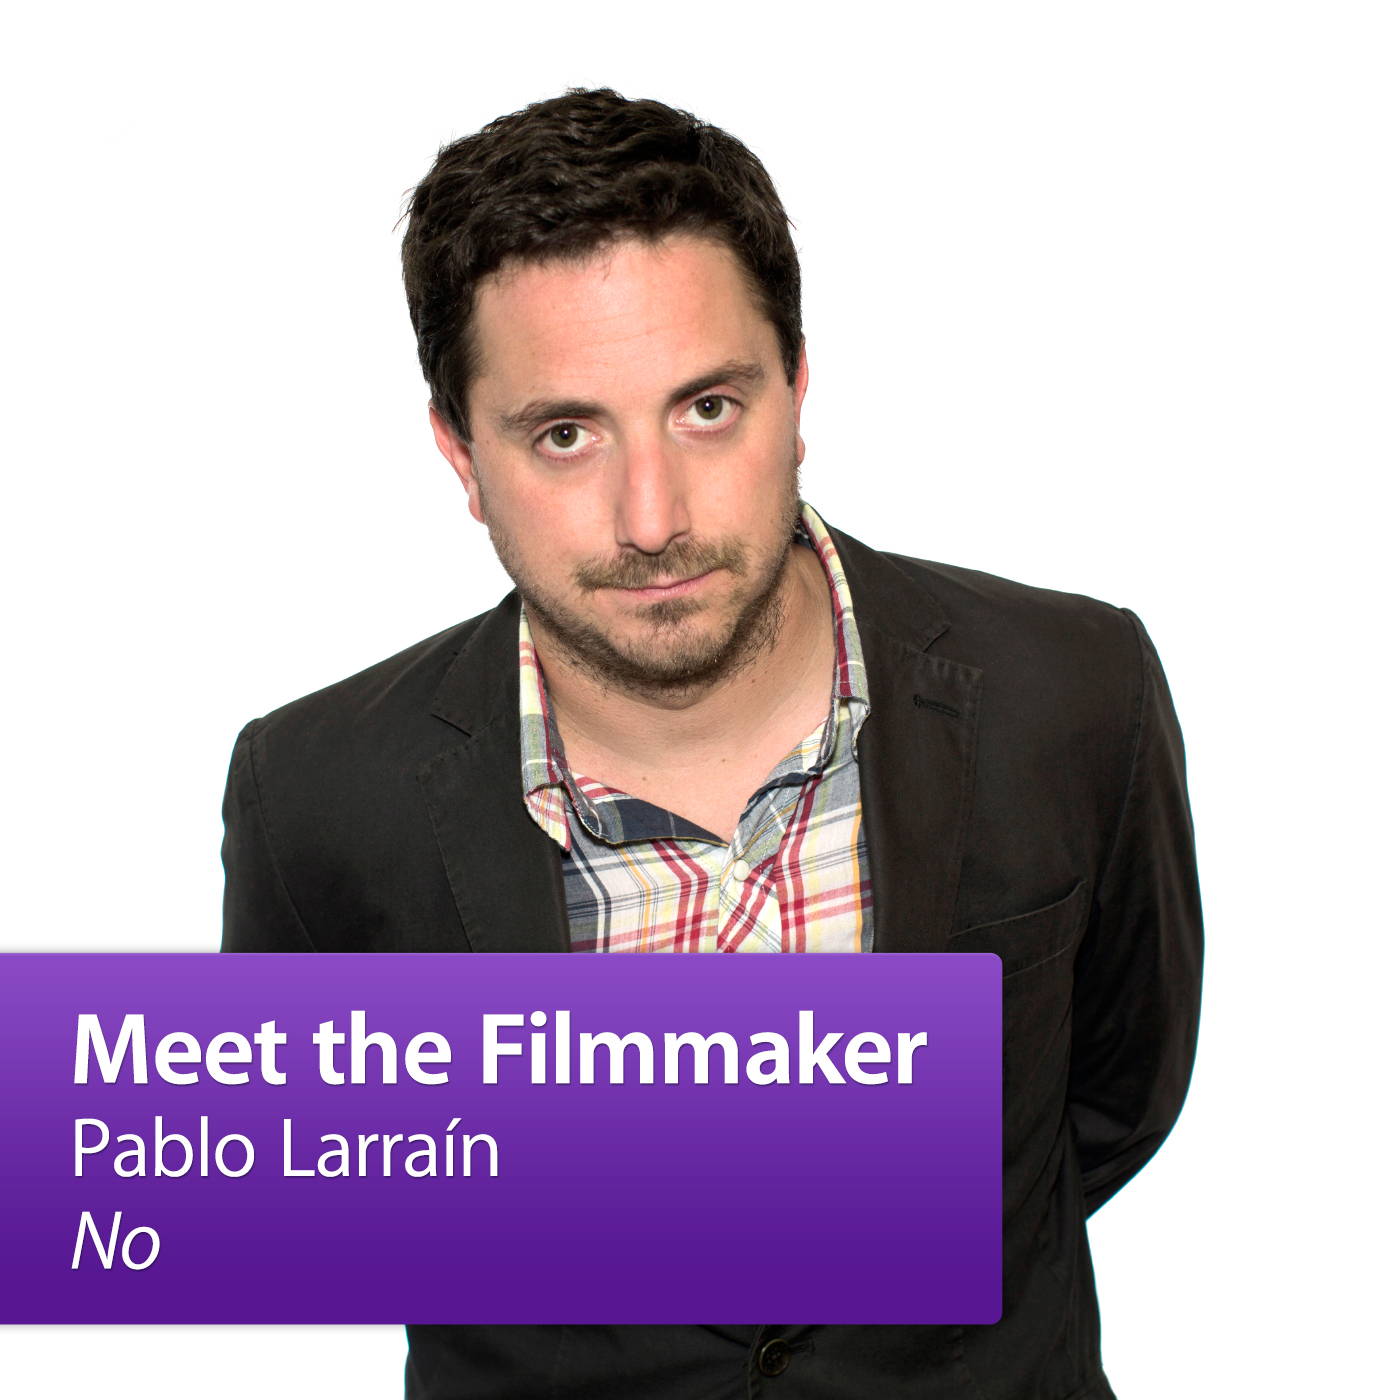 Pablo Larraín, "No": Meet the Filmmaker